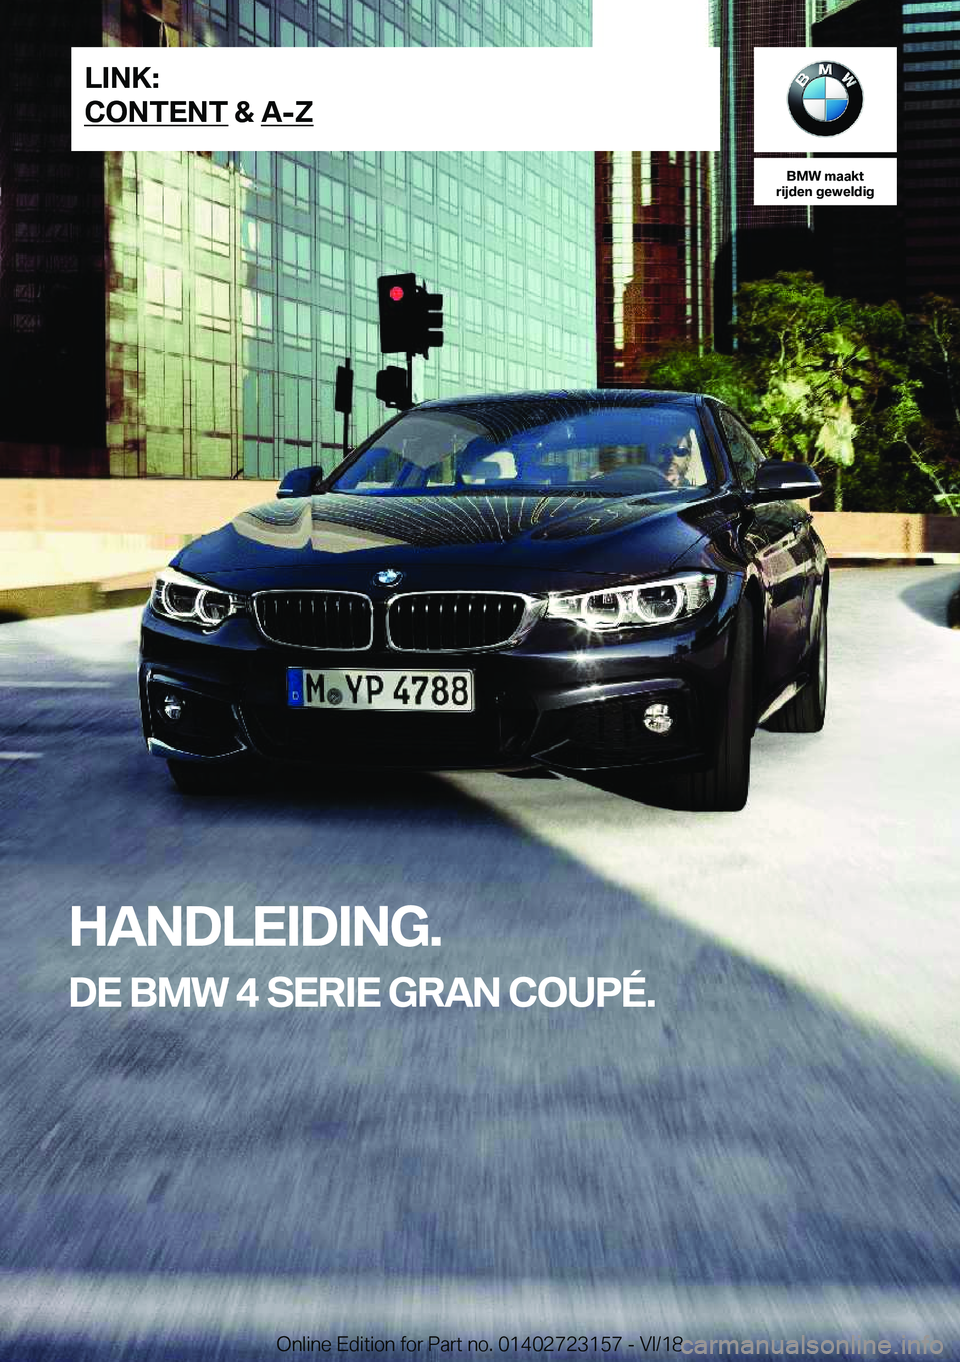 BMW 4 SERIES COUPE 2019  Instructieboekjes (in Dutch) �B�M�W��m�a�a�k�t
�r�i�j�d�e�n��g�e�w�e�l�d�i�g
�H�A�N�D�L�E�I�D�I�N�G�.
�D�E��B�M�W��4��S�E�R�I�E��G�R�A�N��C�O�U�P�